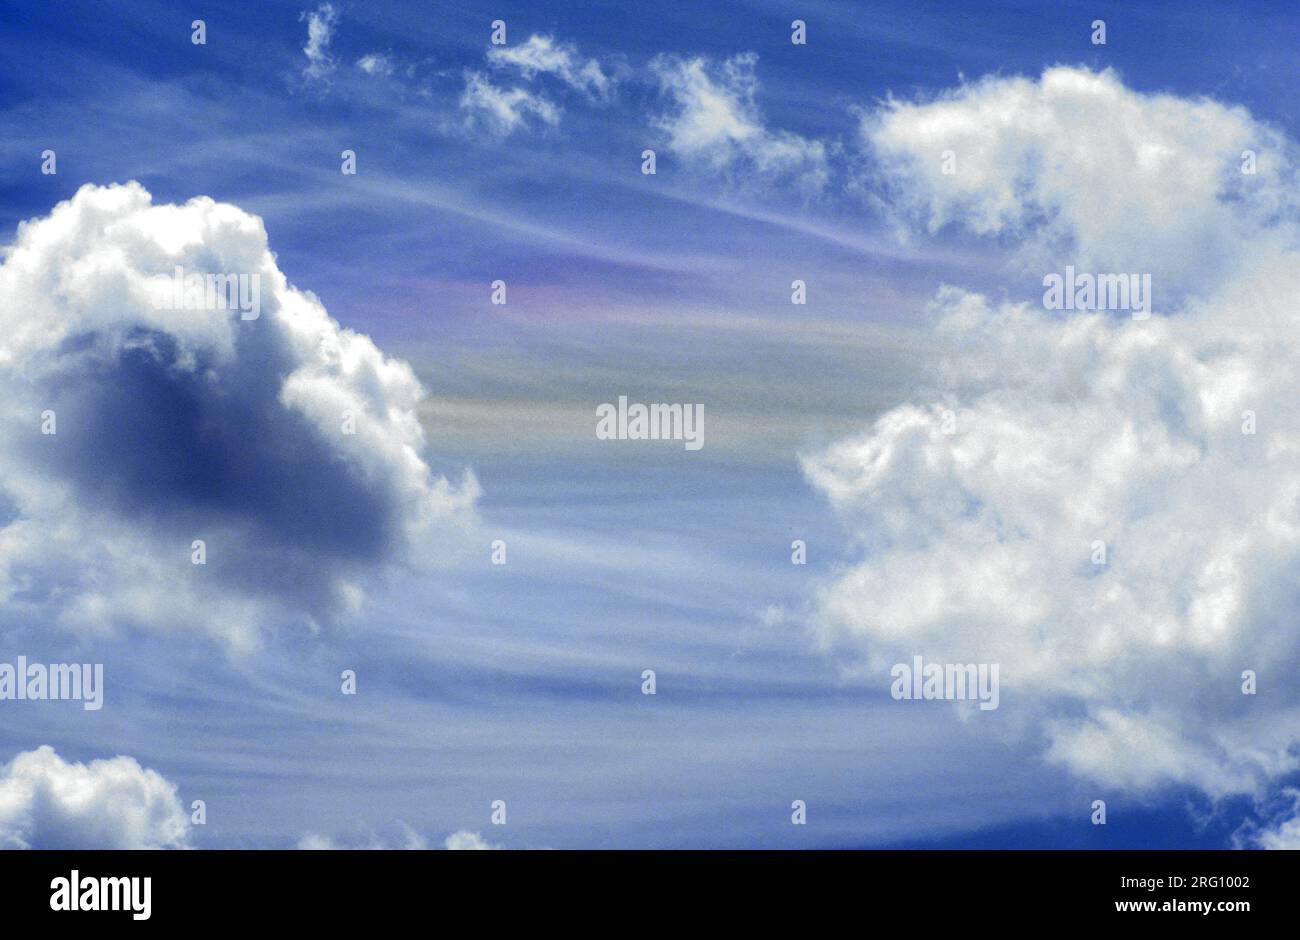 Blue and white cloudy skies, Australia Stock Photo